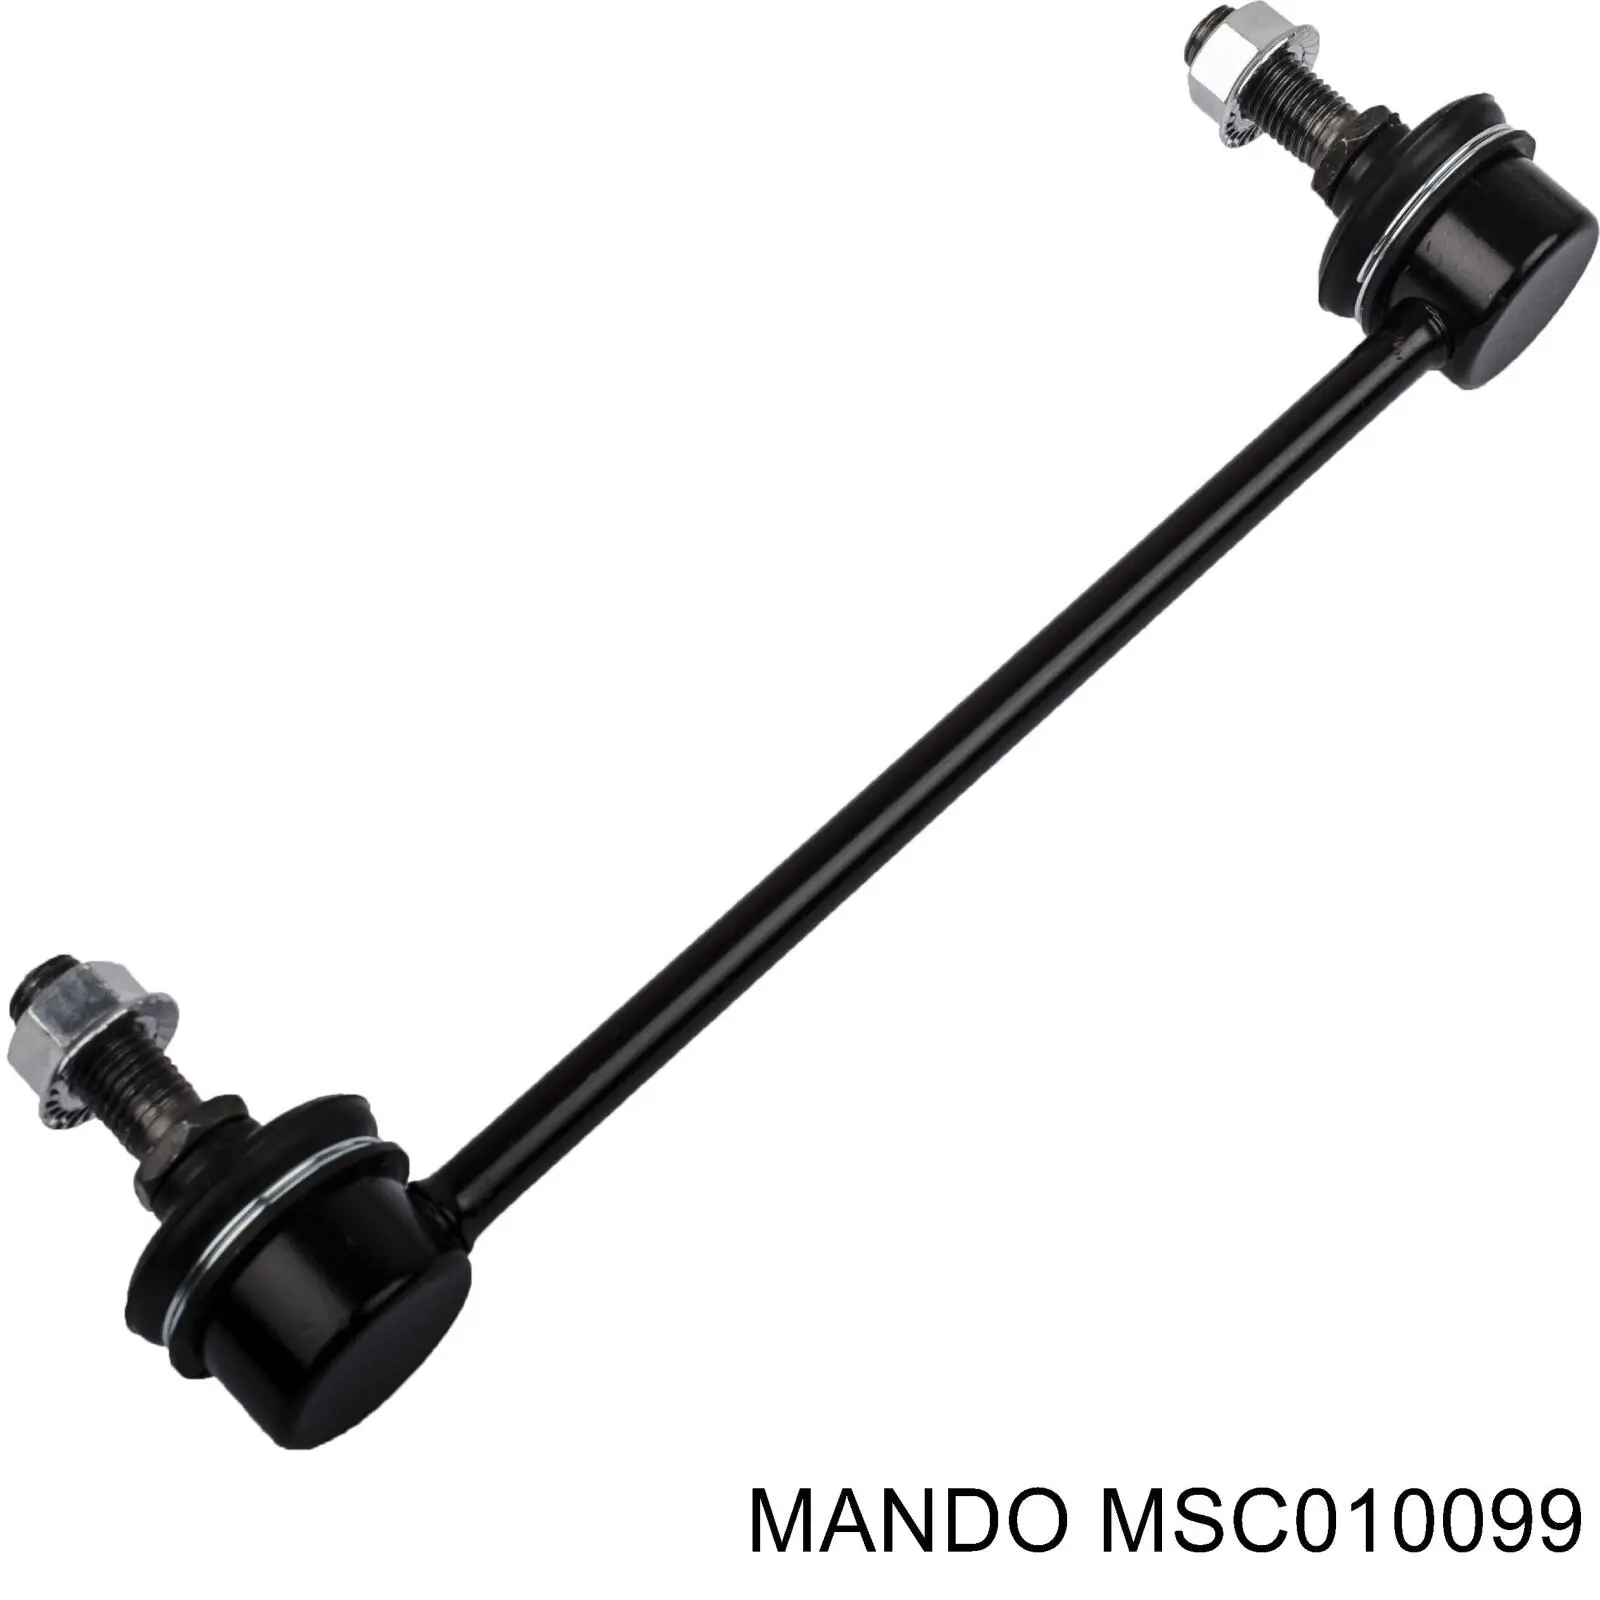 MSC010099 Mando стойка стабилизатора заднего